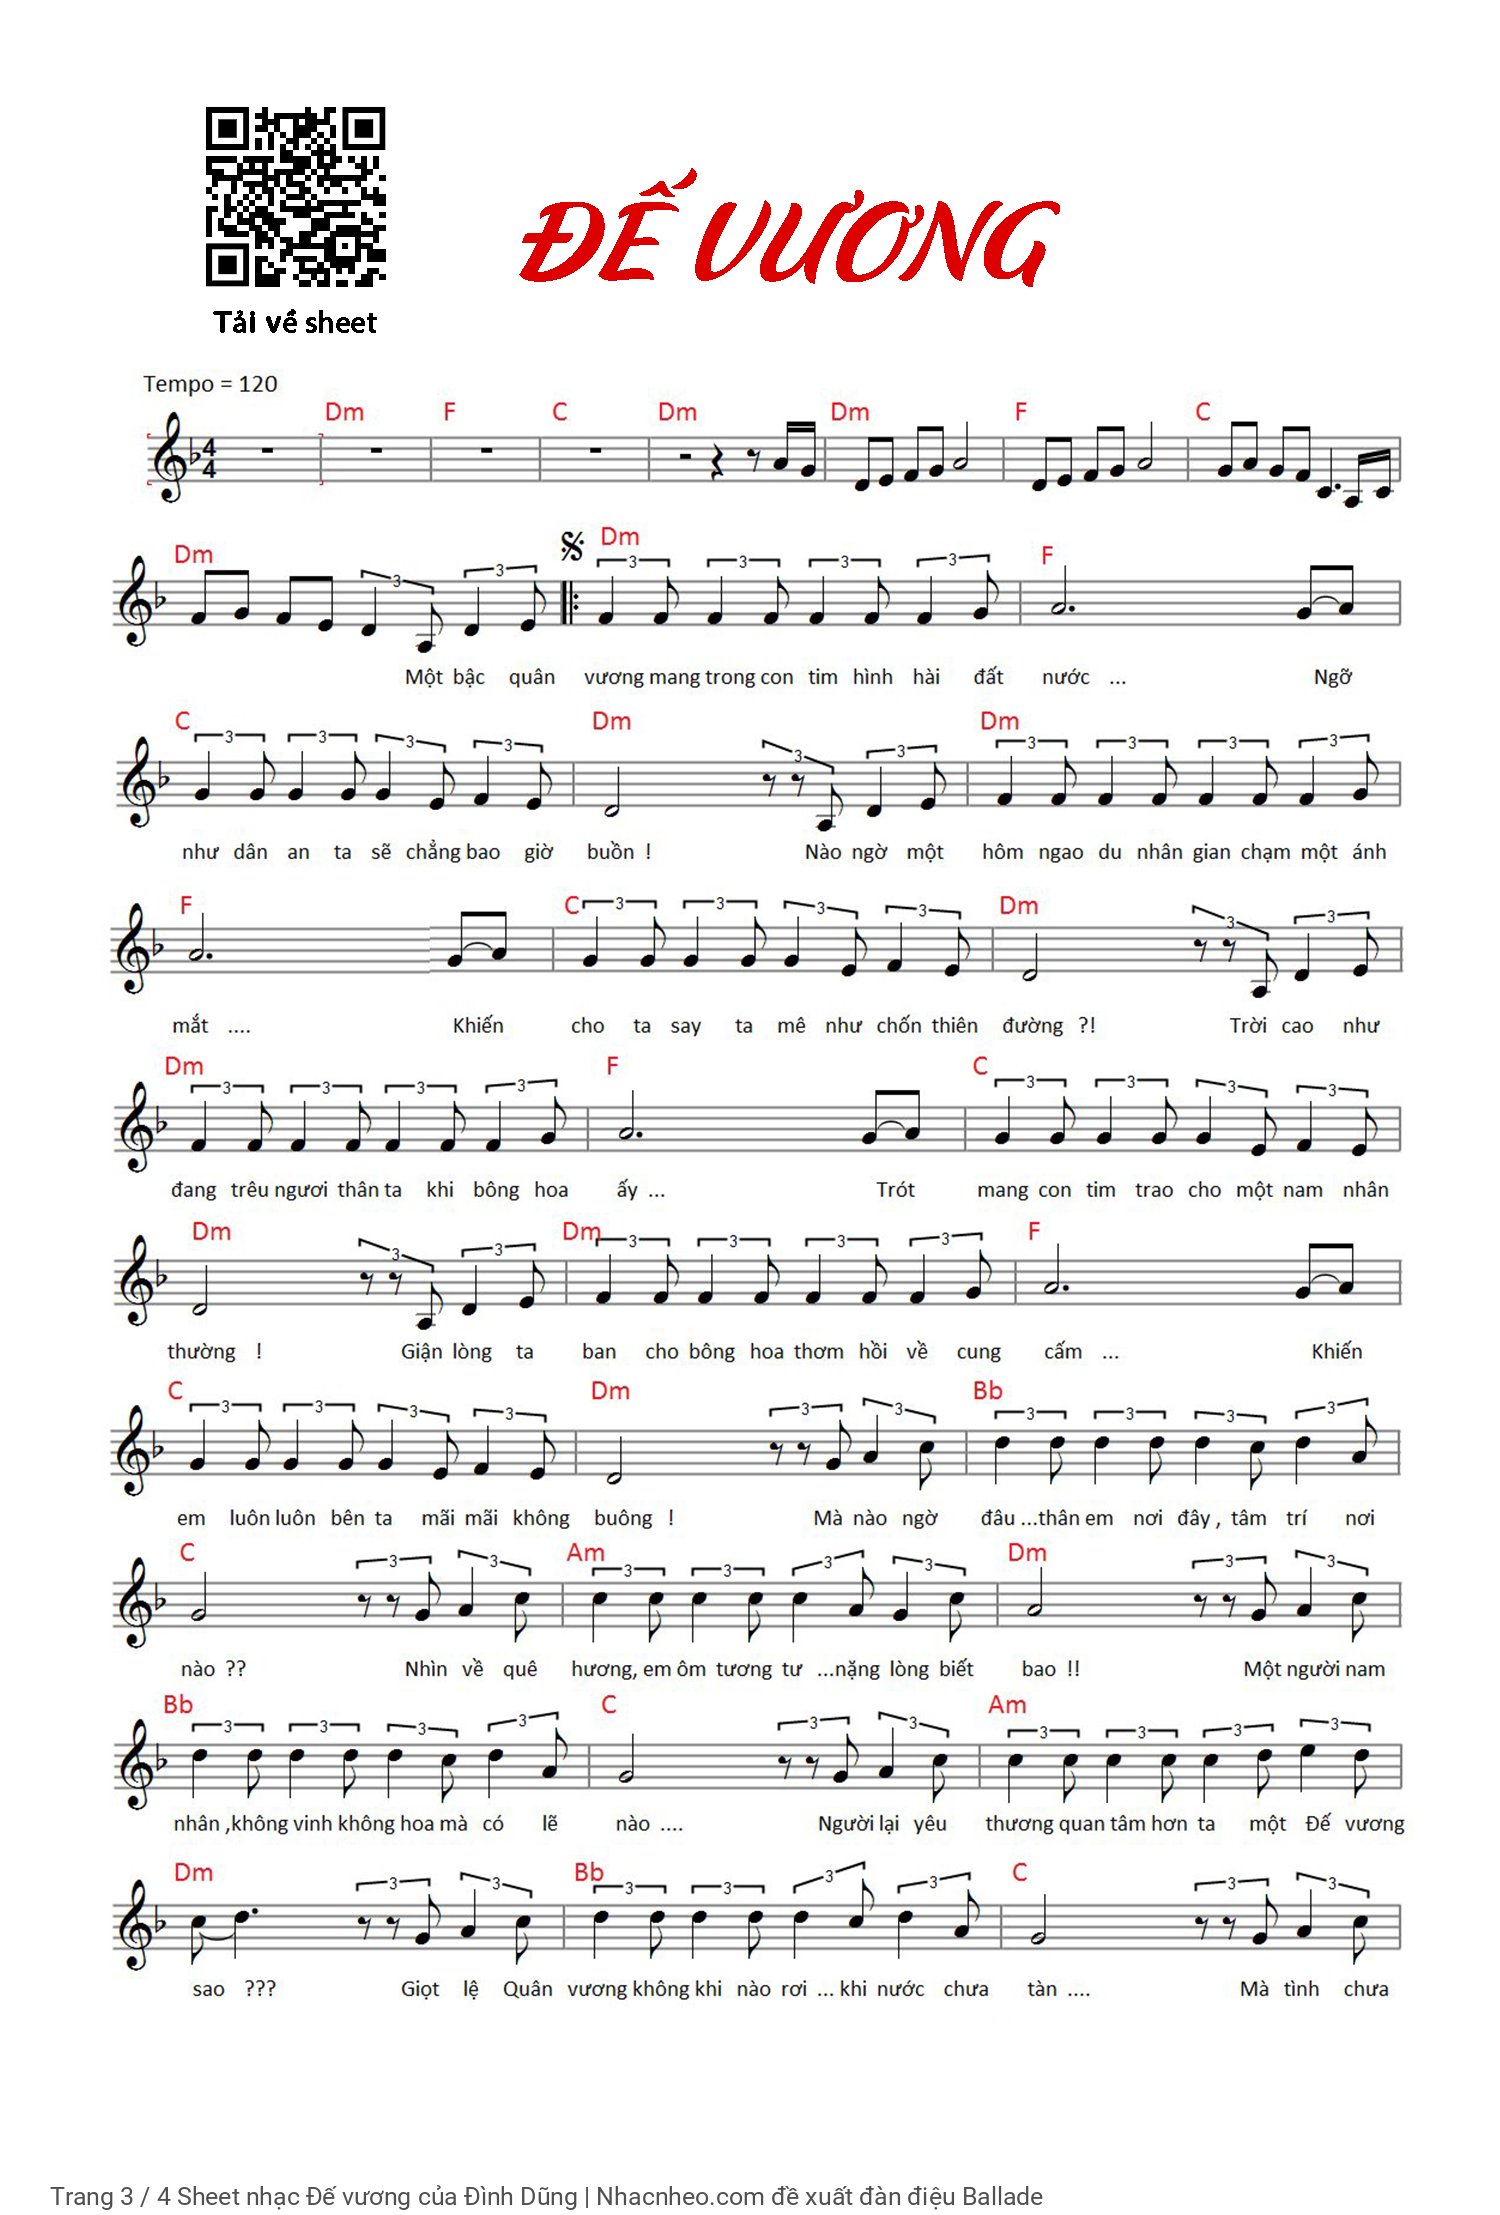 Trang 3 của Sheet nhạc PDF Piano bài hát Đế vương - Đình Dũng